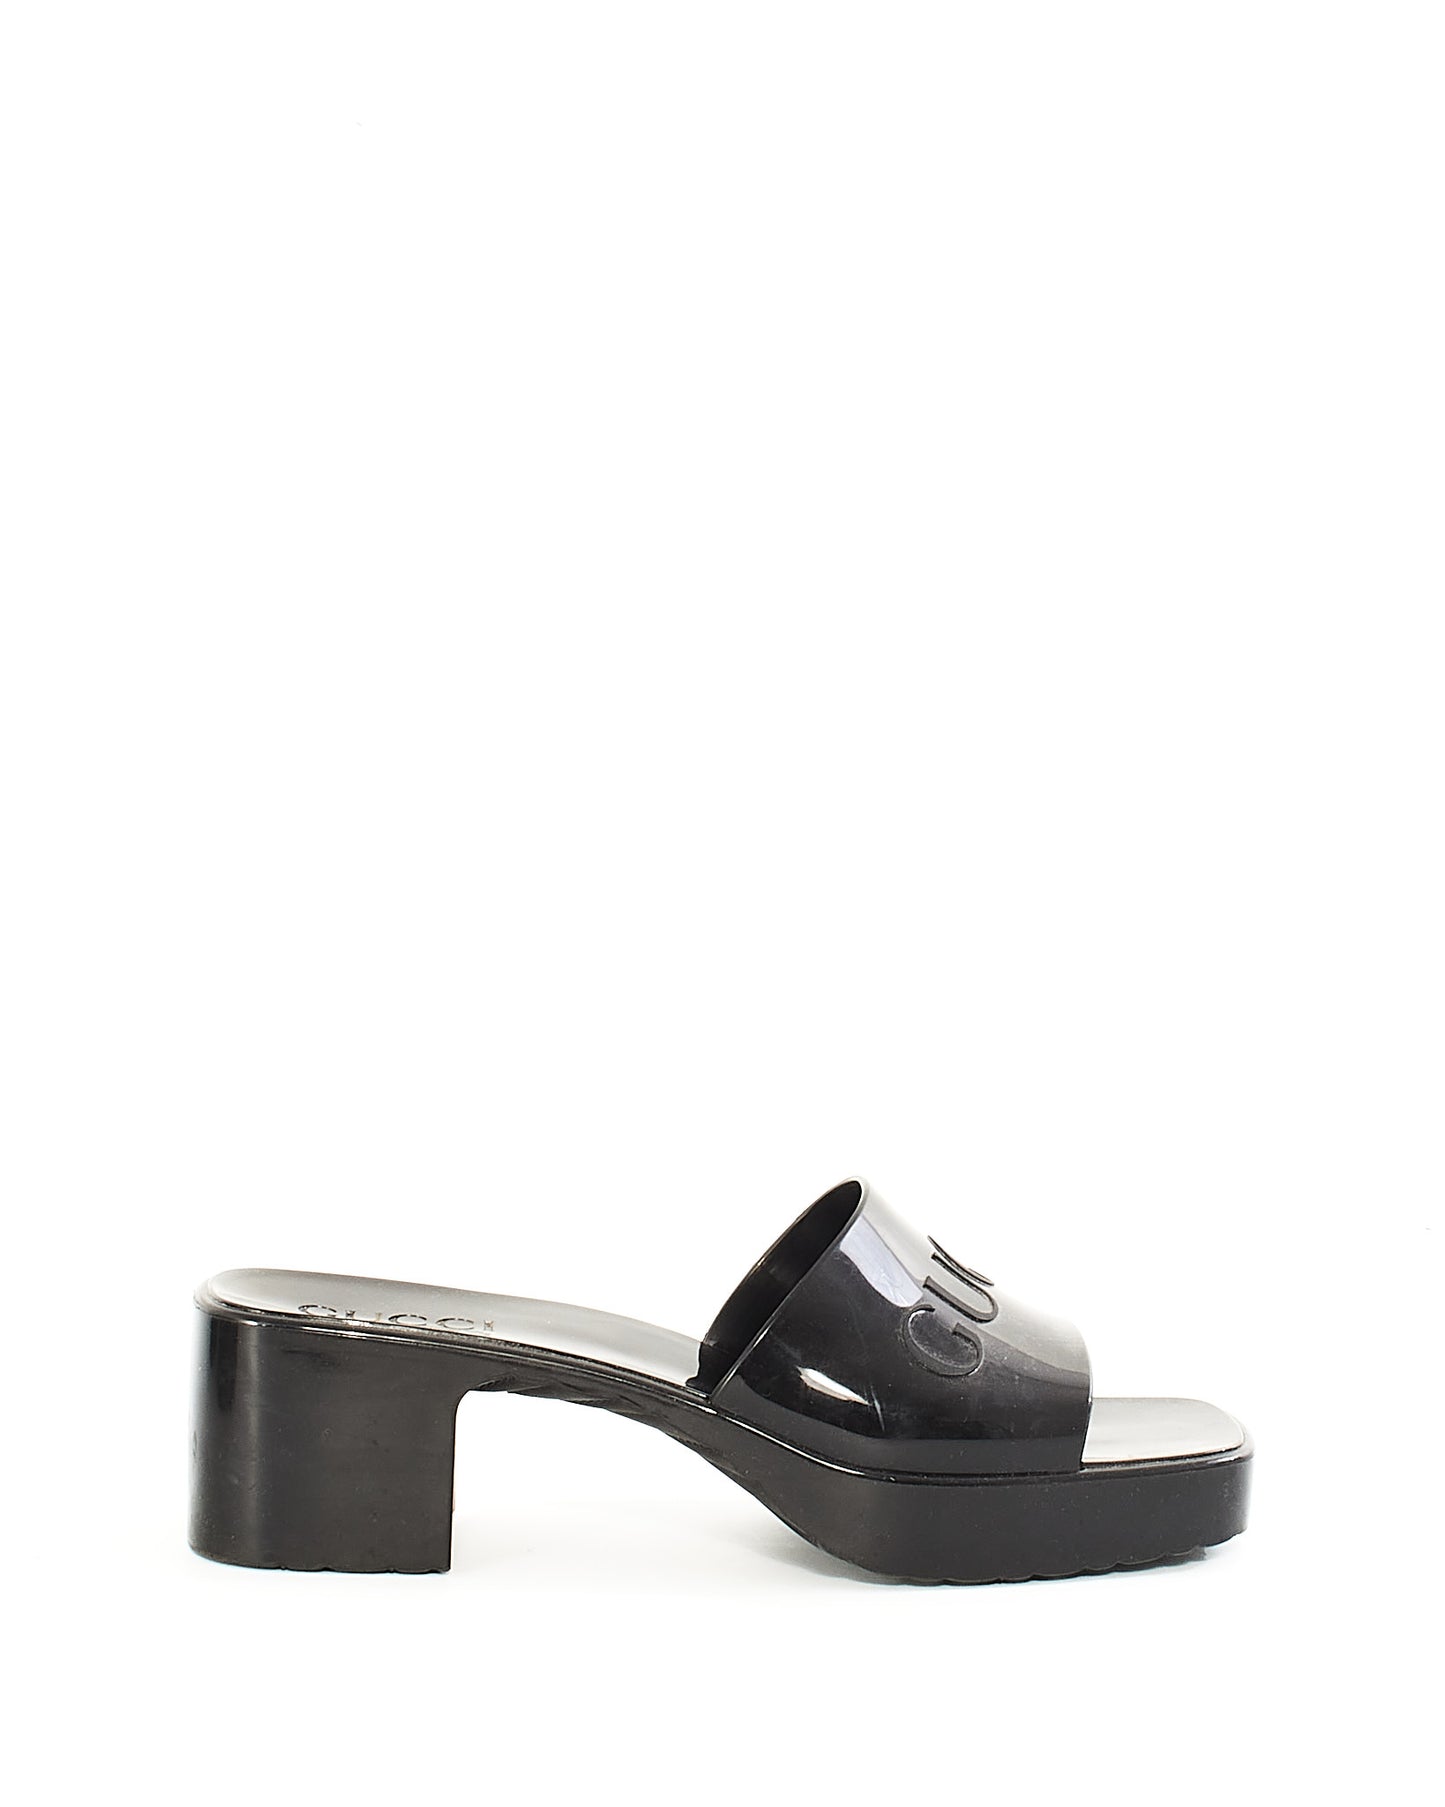 Gucci Black Rubber Platform Slide Sandals - 37